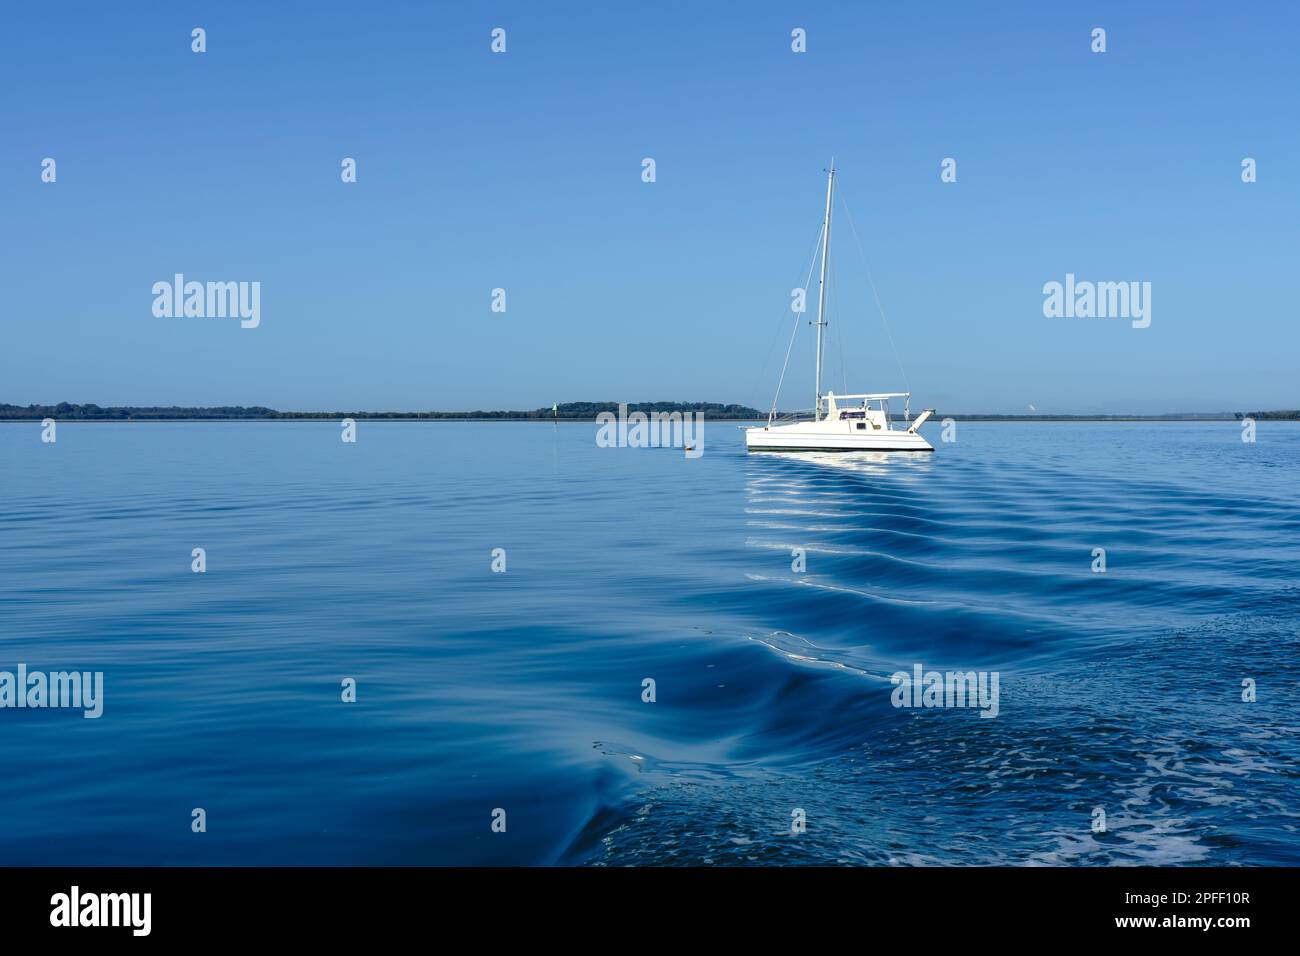 Les ondulations de la station de lavage derrière un bateau conduisent l'œil à un seul bateau blanc sur les eaux calmes et bleues au large de l'île de Coochiemudlo Banque D'Images